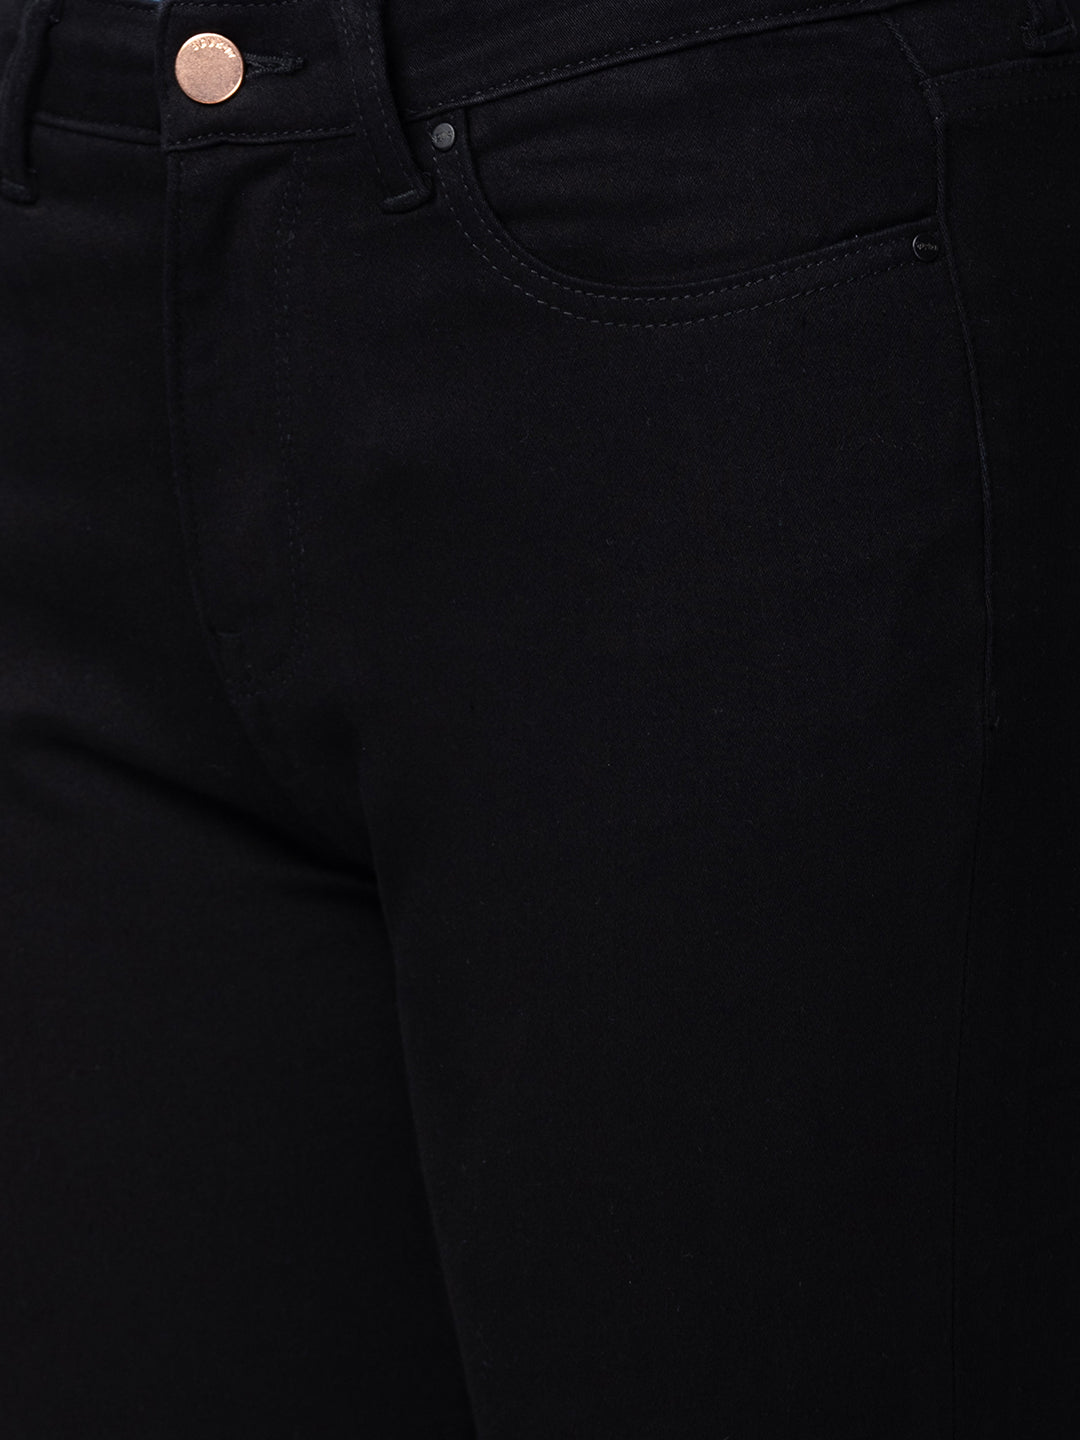 Spykar Women Black Cotton Bootcut Fit Ankle Length Jeans (Elissa)